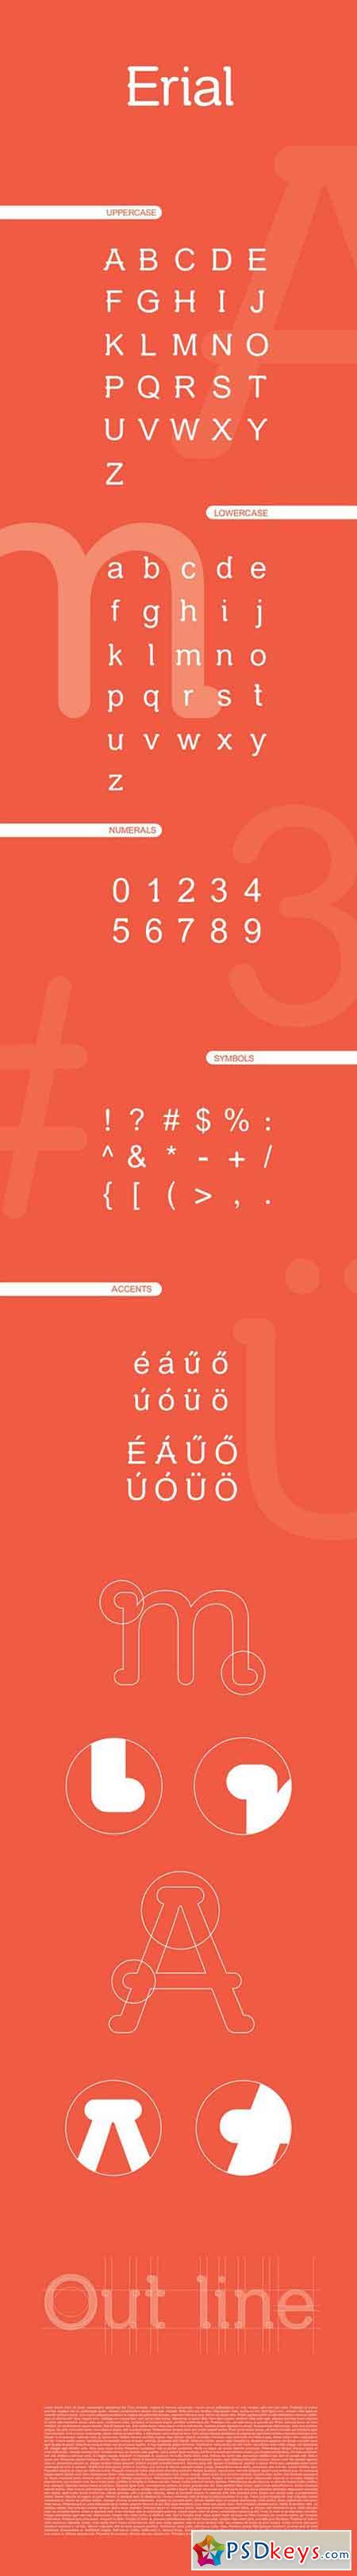 Erial Typeface